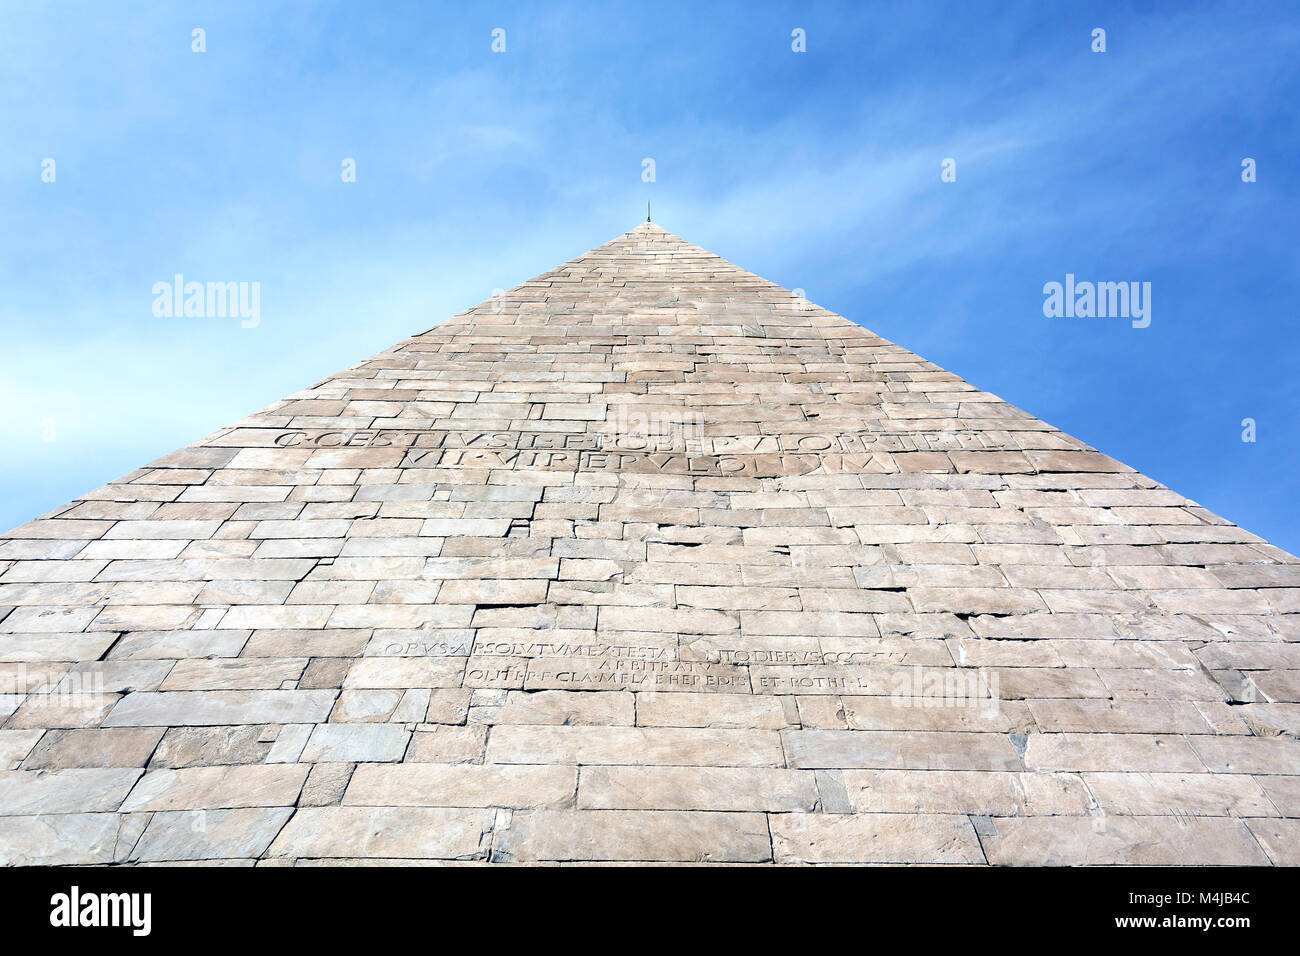 The Pyramid of Cestius  in Rome Stock Photo